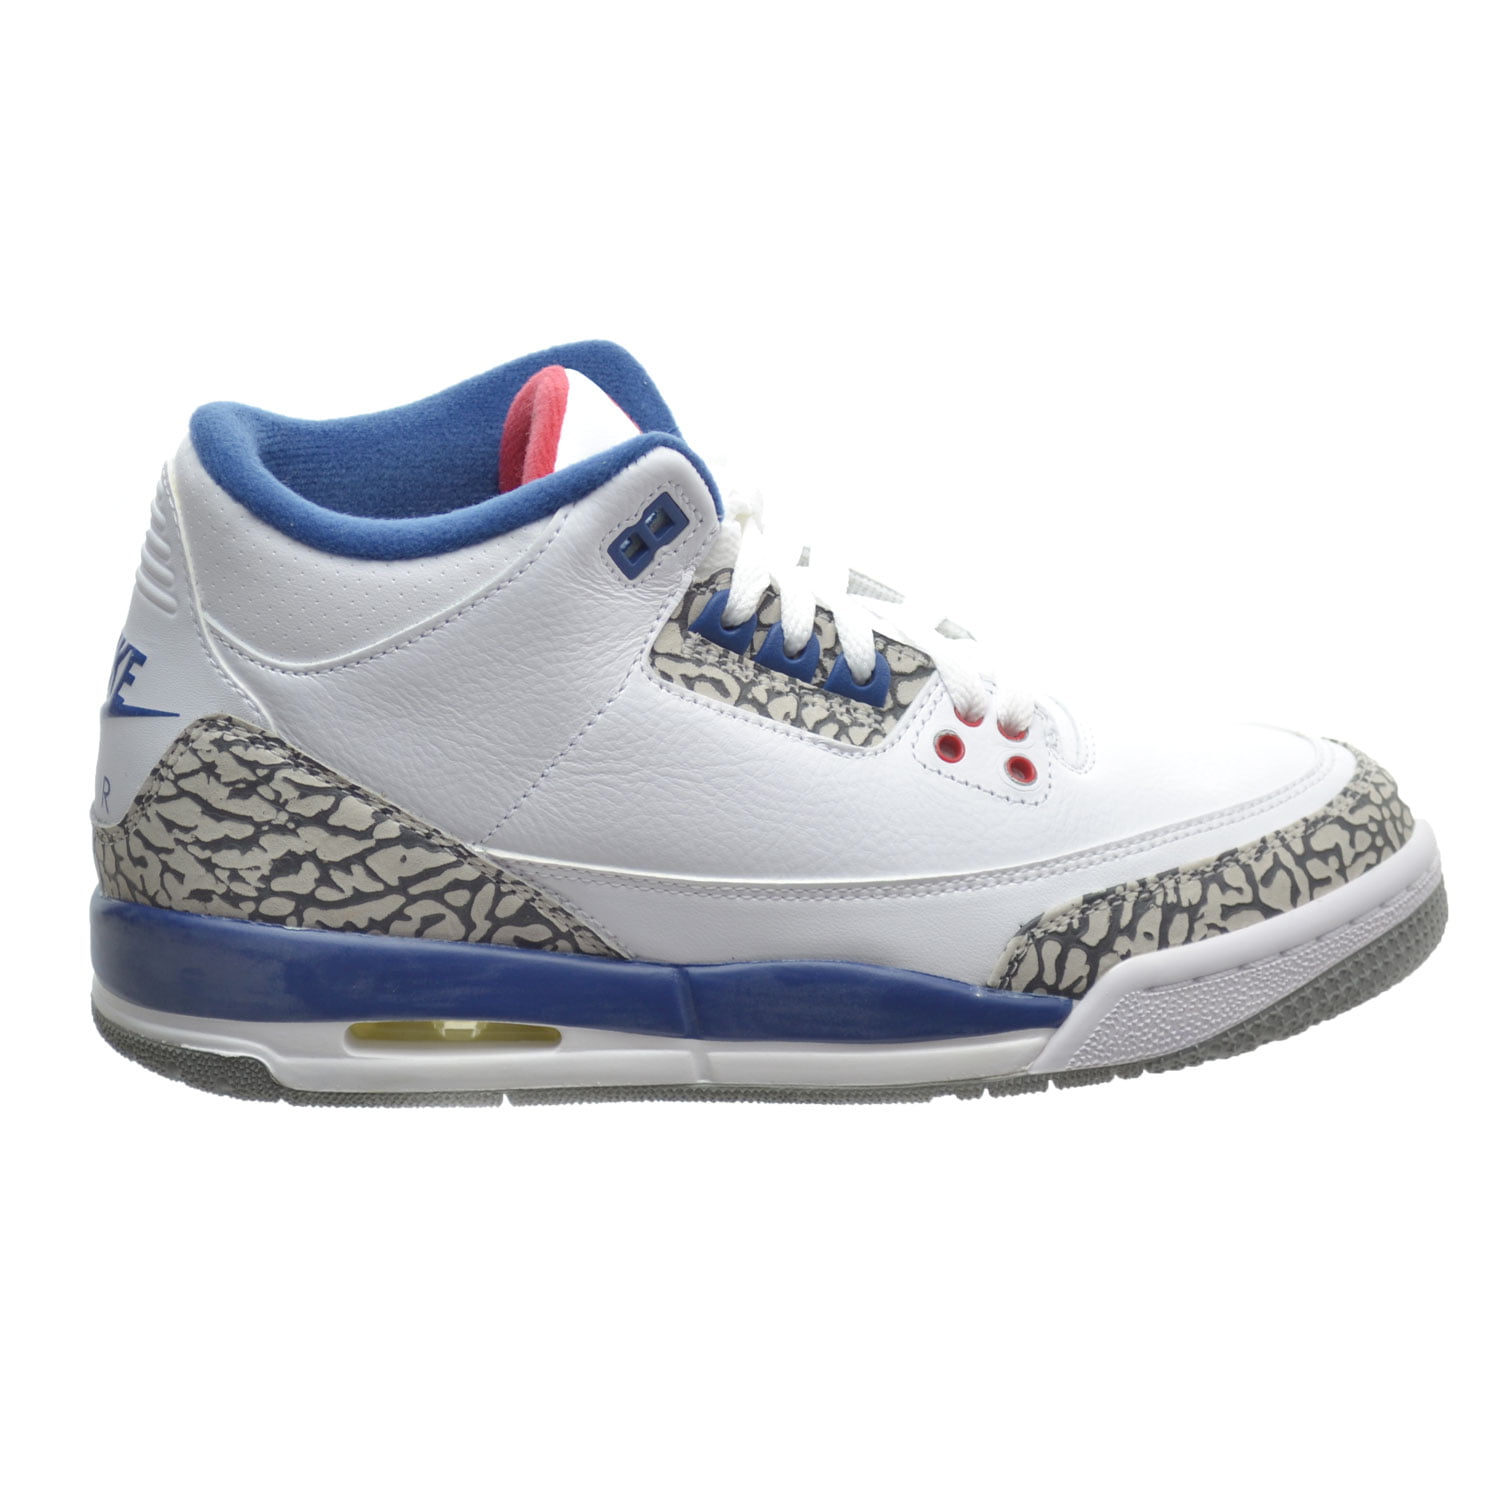 Nike Air Jordan 3 Retro OG Basketball Shoe - Walmart.com